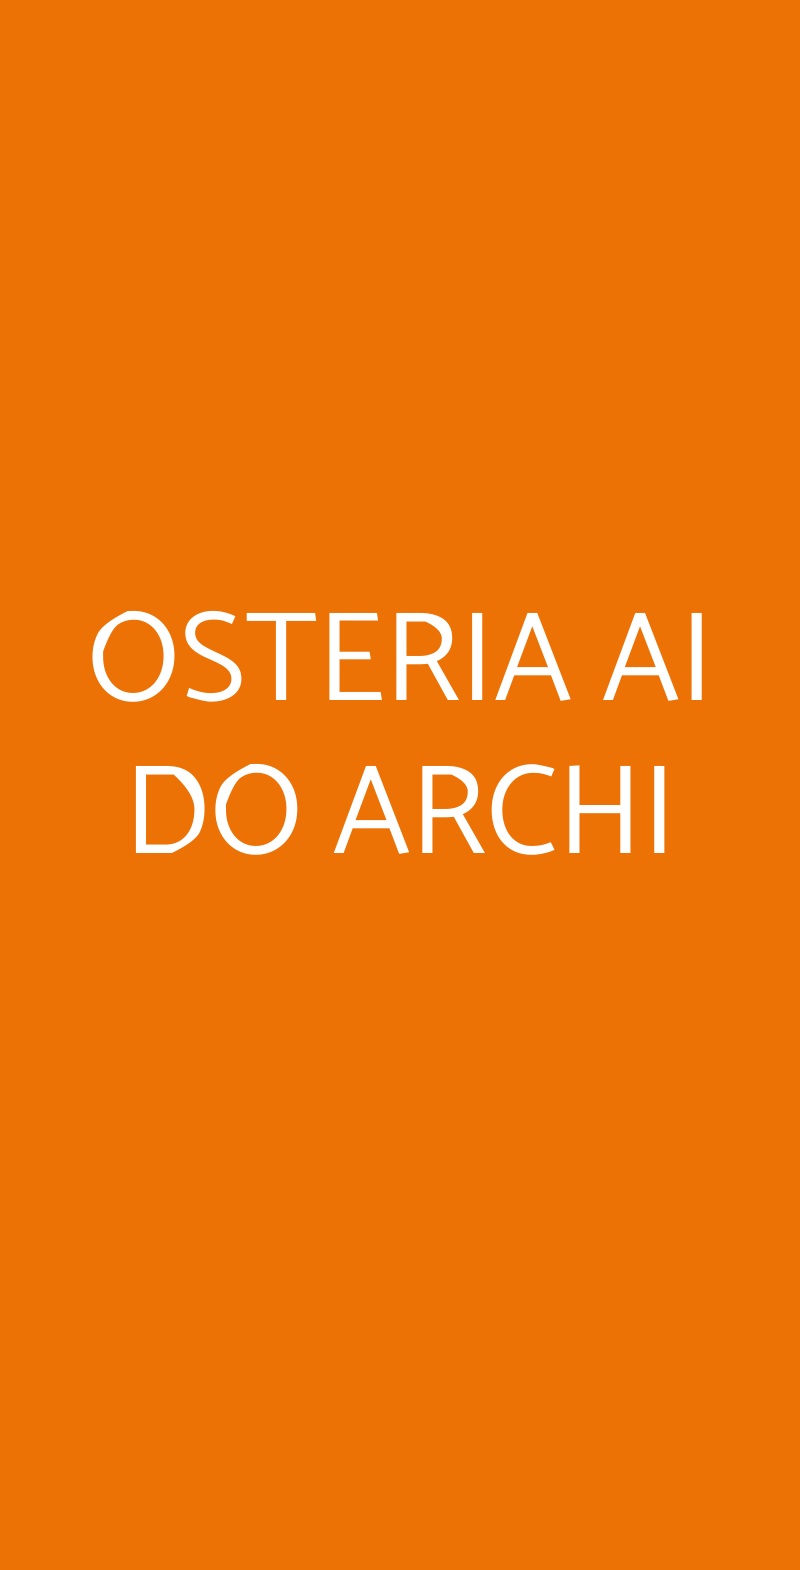 OSTERIA AI DO ARCHI Venezia menù 1 pagina